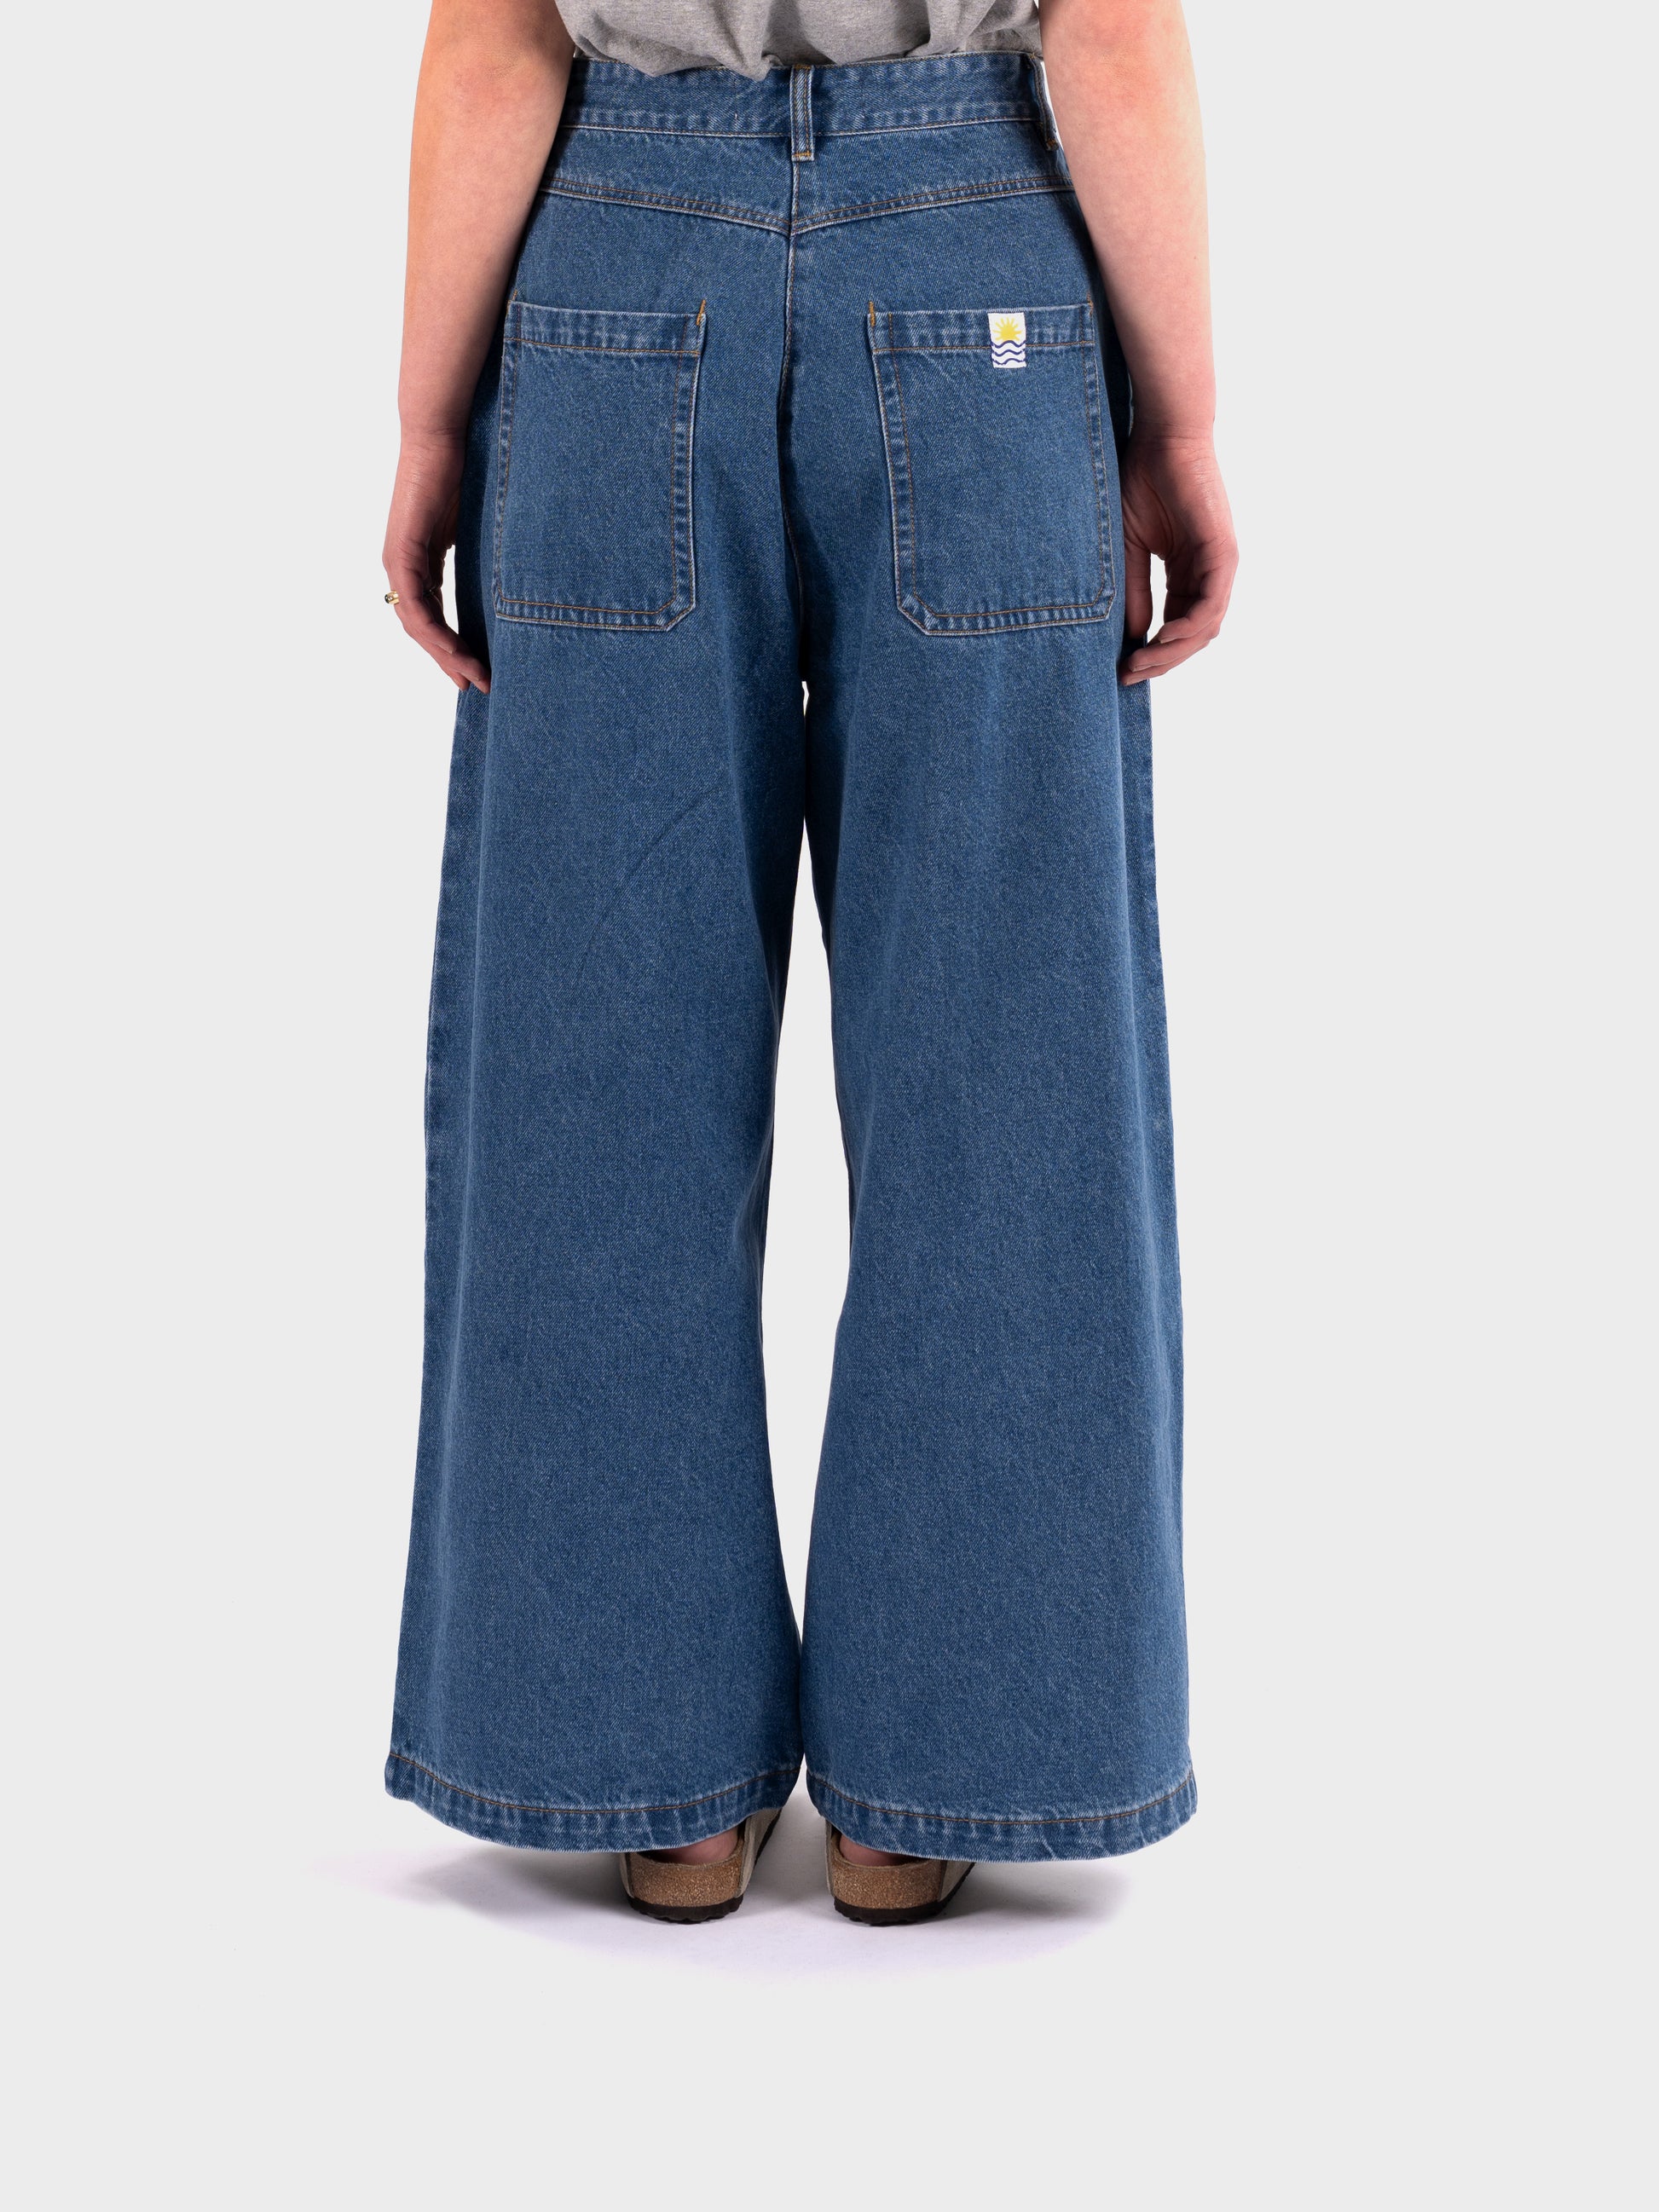 L.F Markey Myles Jeans - Mid Blue